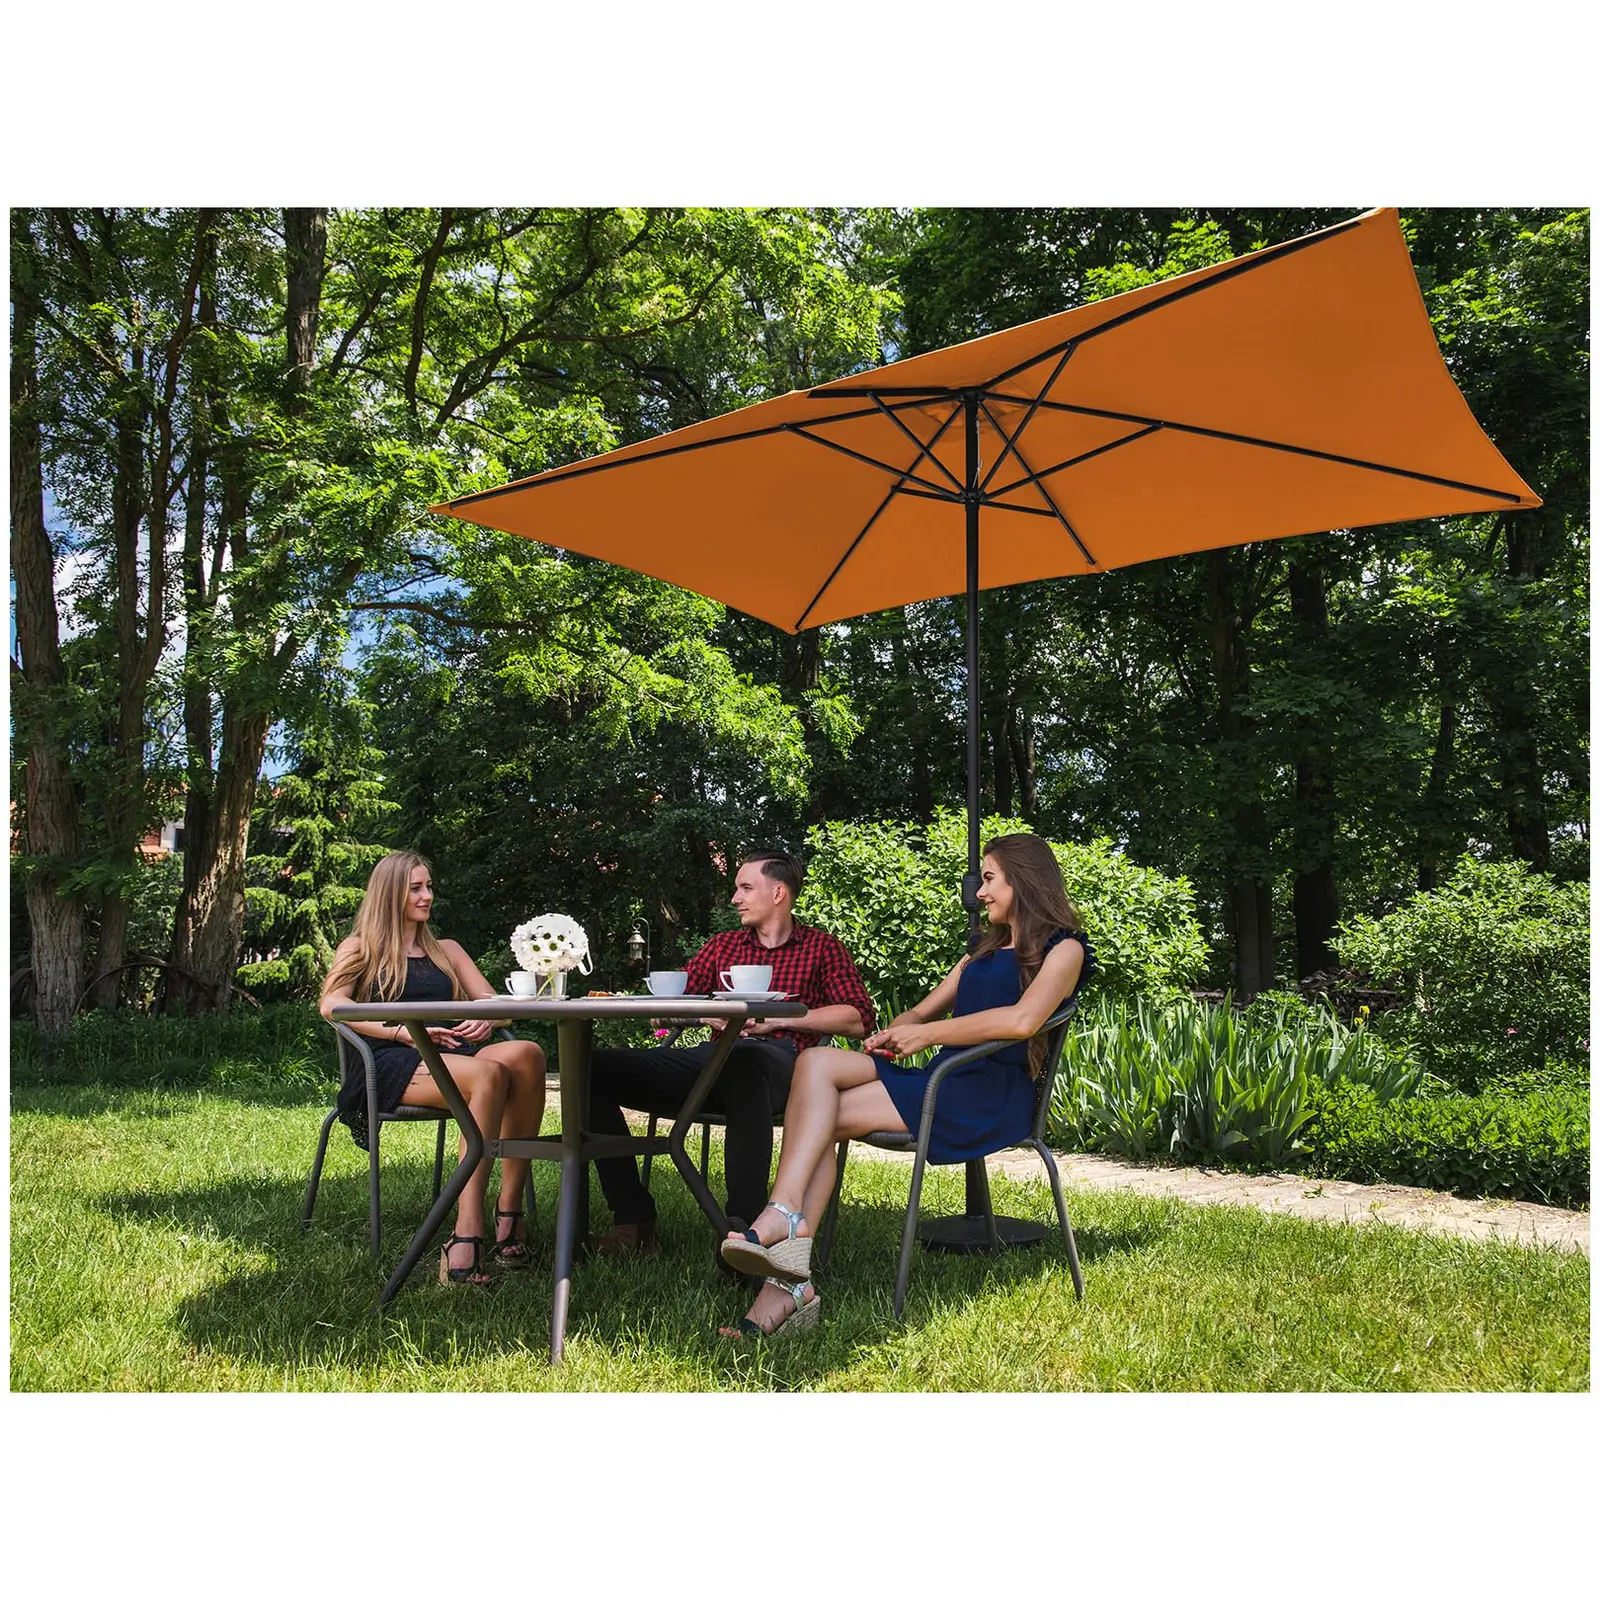 Factory second Large Outdoor Umbrella - orange - rectangular - 200 x 300 cm